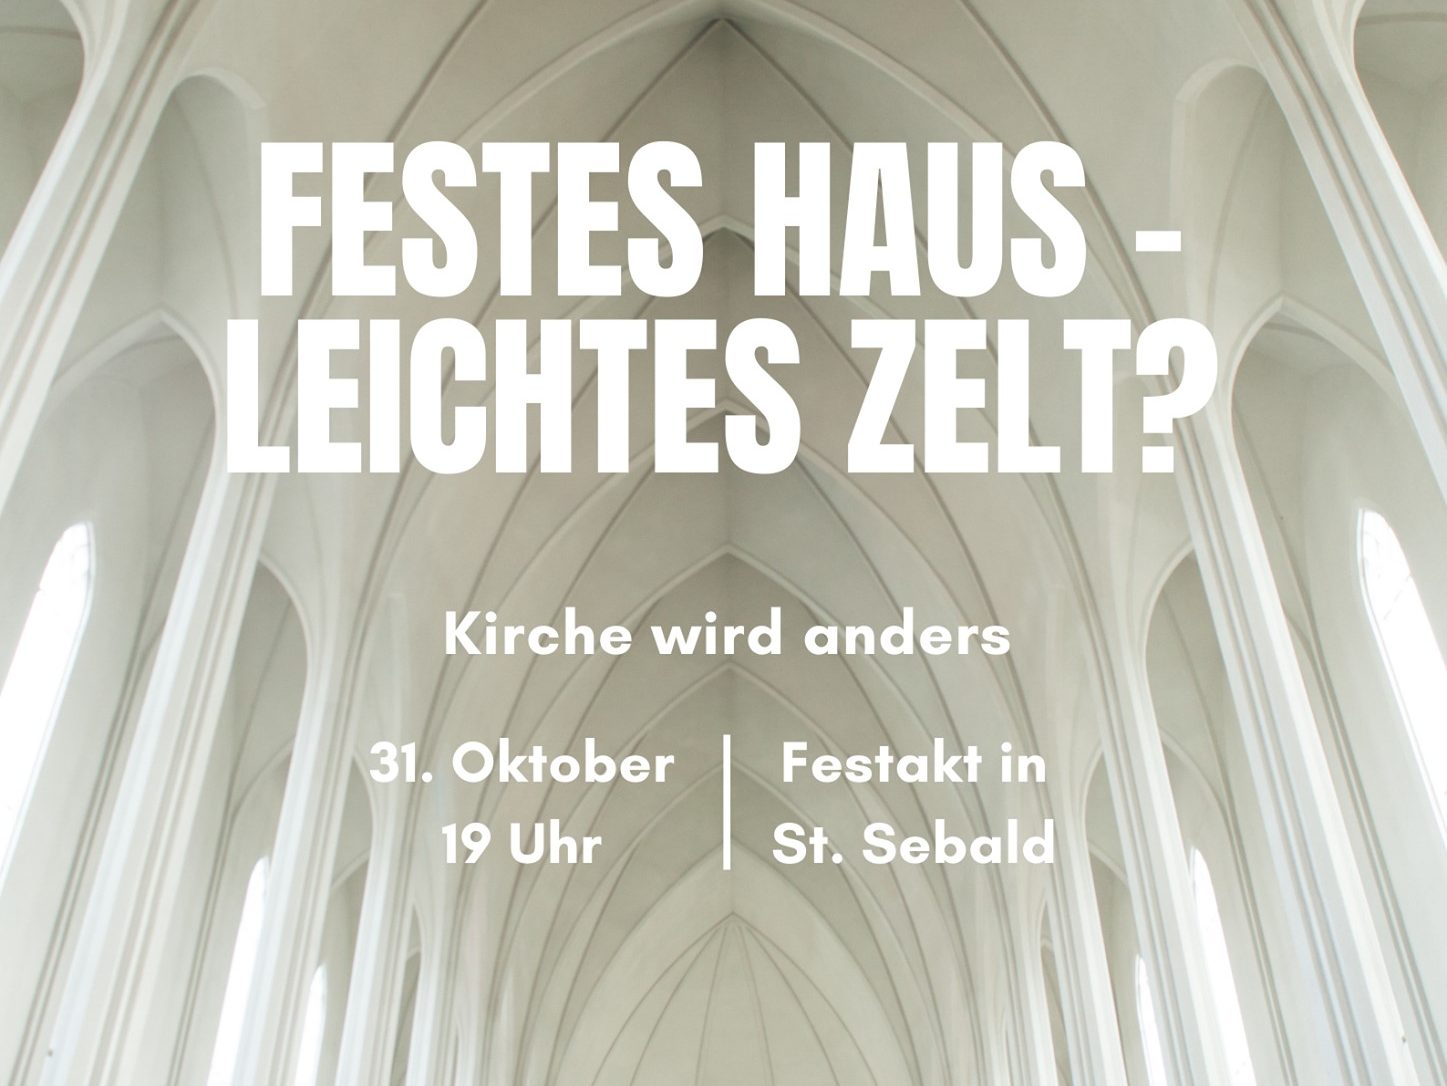 Festes Haus - Leichtes Zelt?
Kirche wird anders
Einladung zum Festakt in St. Sebald am Reformationsfest, 31.10.2021 um 19 Uhr